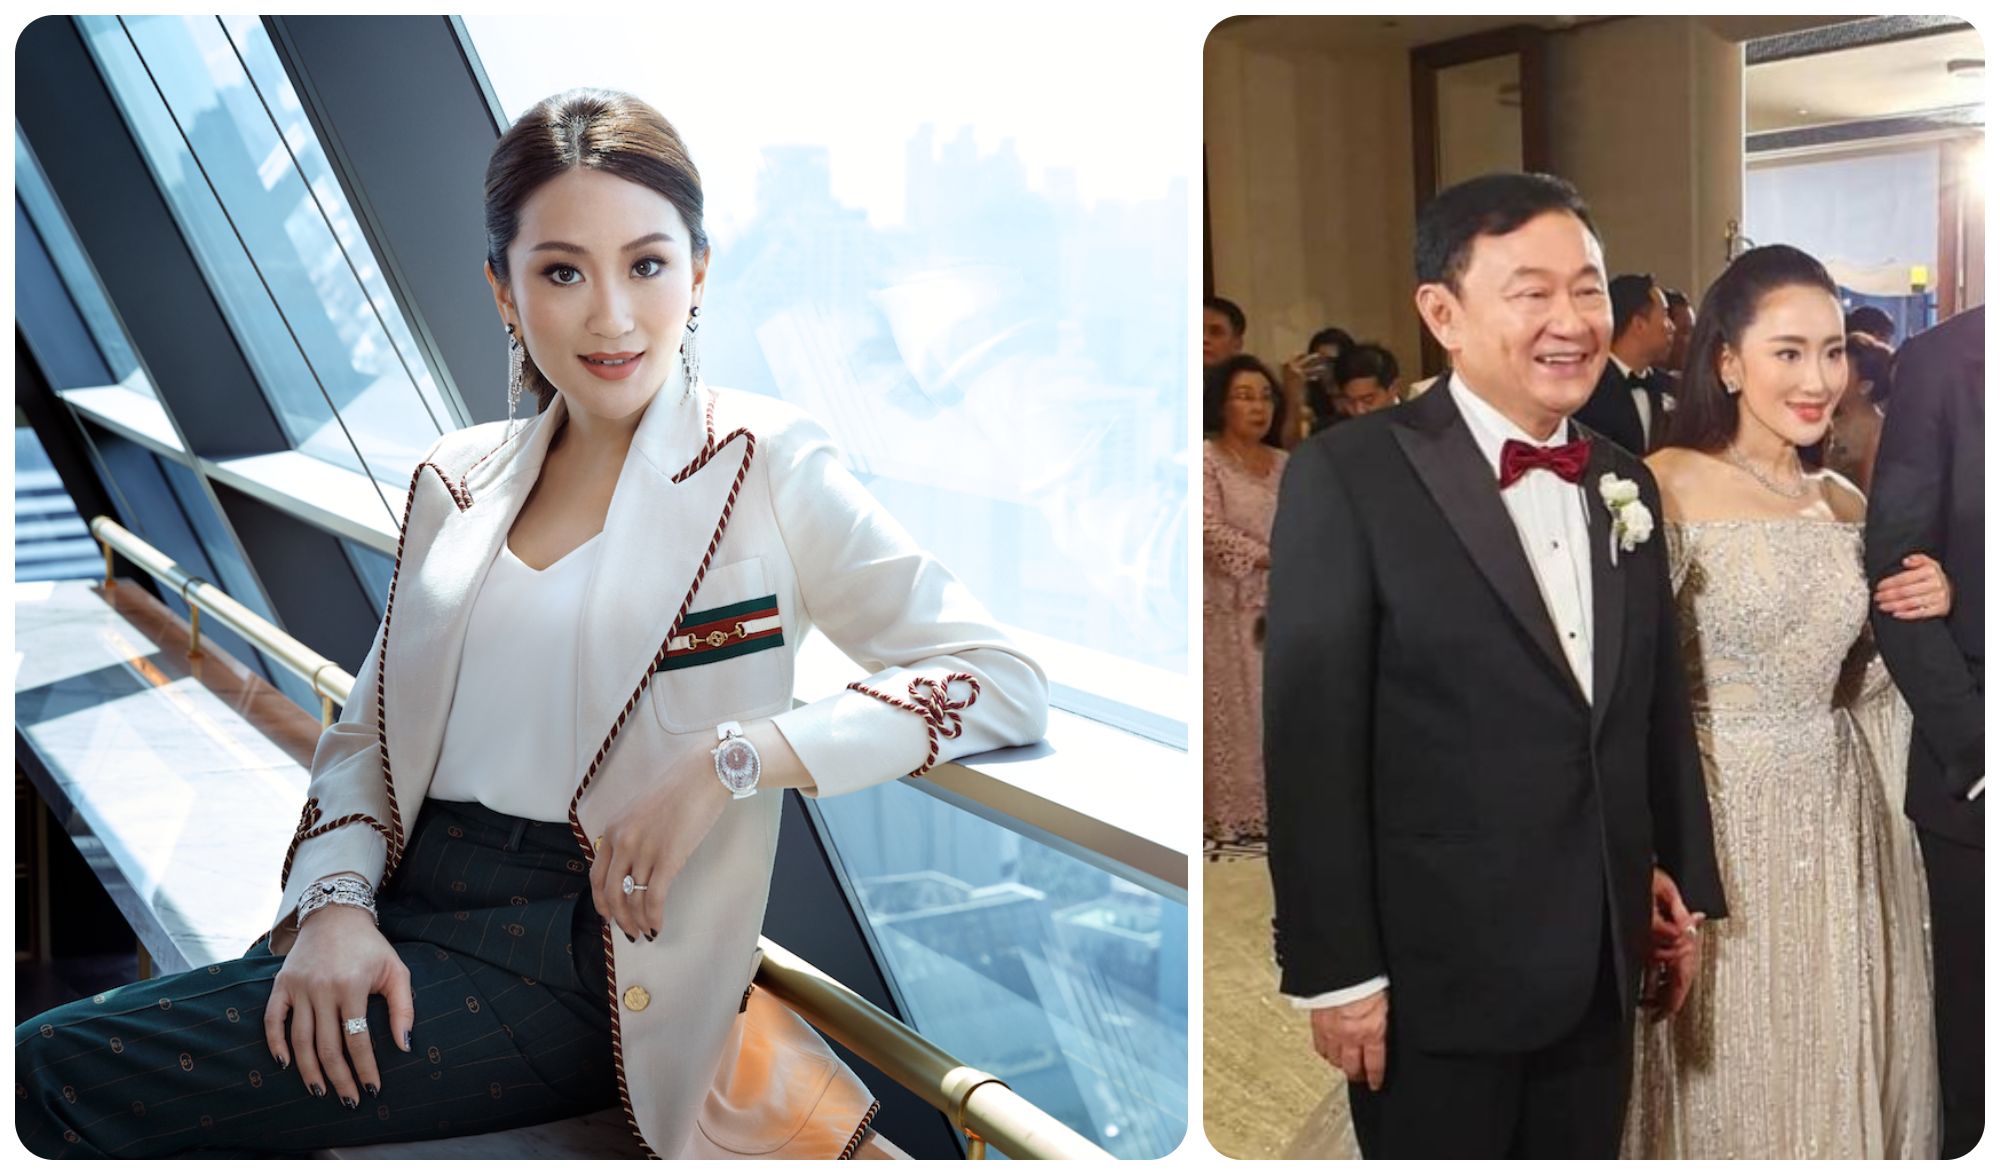 Đón xem hình ảnh Thaksin - nhà lãnh đạo Thái Lan được yêu mến bởi nhiều người dân với những nét đặc trưng riêng. Với sự nghiệp và đóng góp cho đất nước, Thaksin xứng đáng là một người đáng quan tâm và tôn trọng.